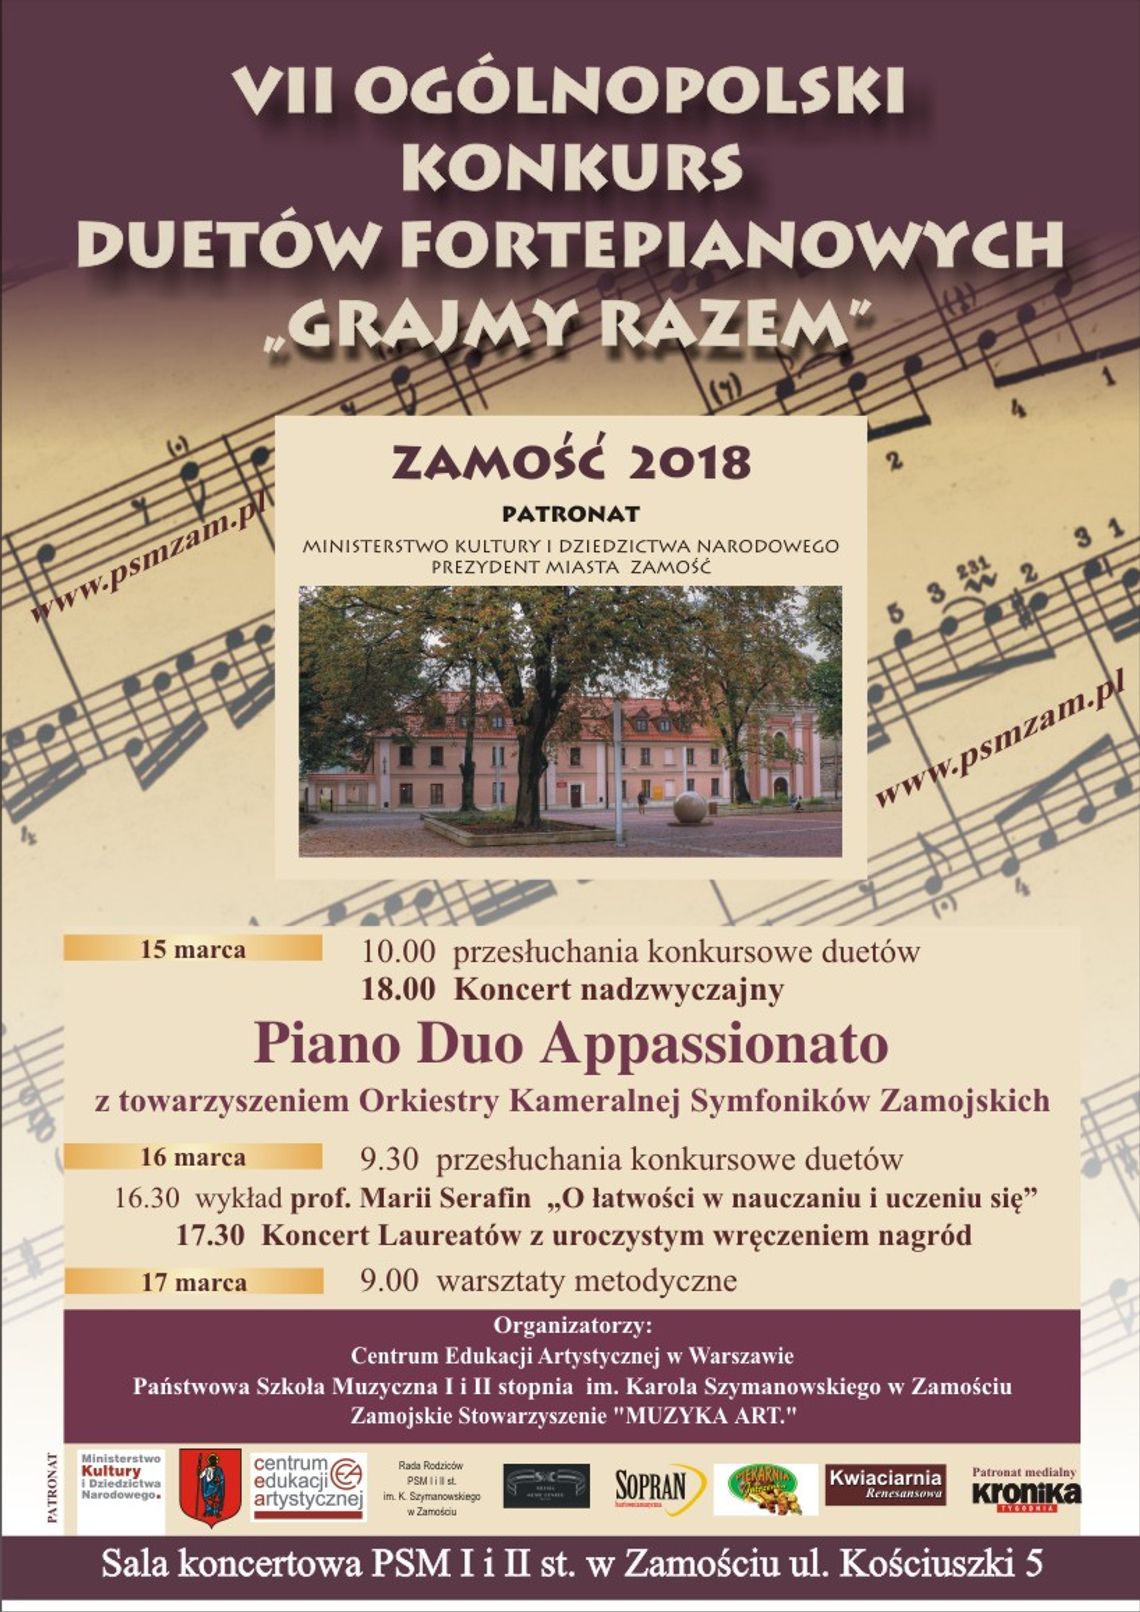 Grand Prix Ogónopolskiego Konkursu Duetów Fortepianowych znowu dla duetu z Zamościa?